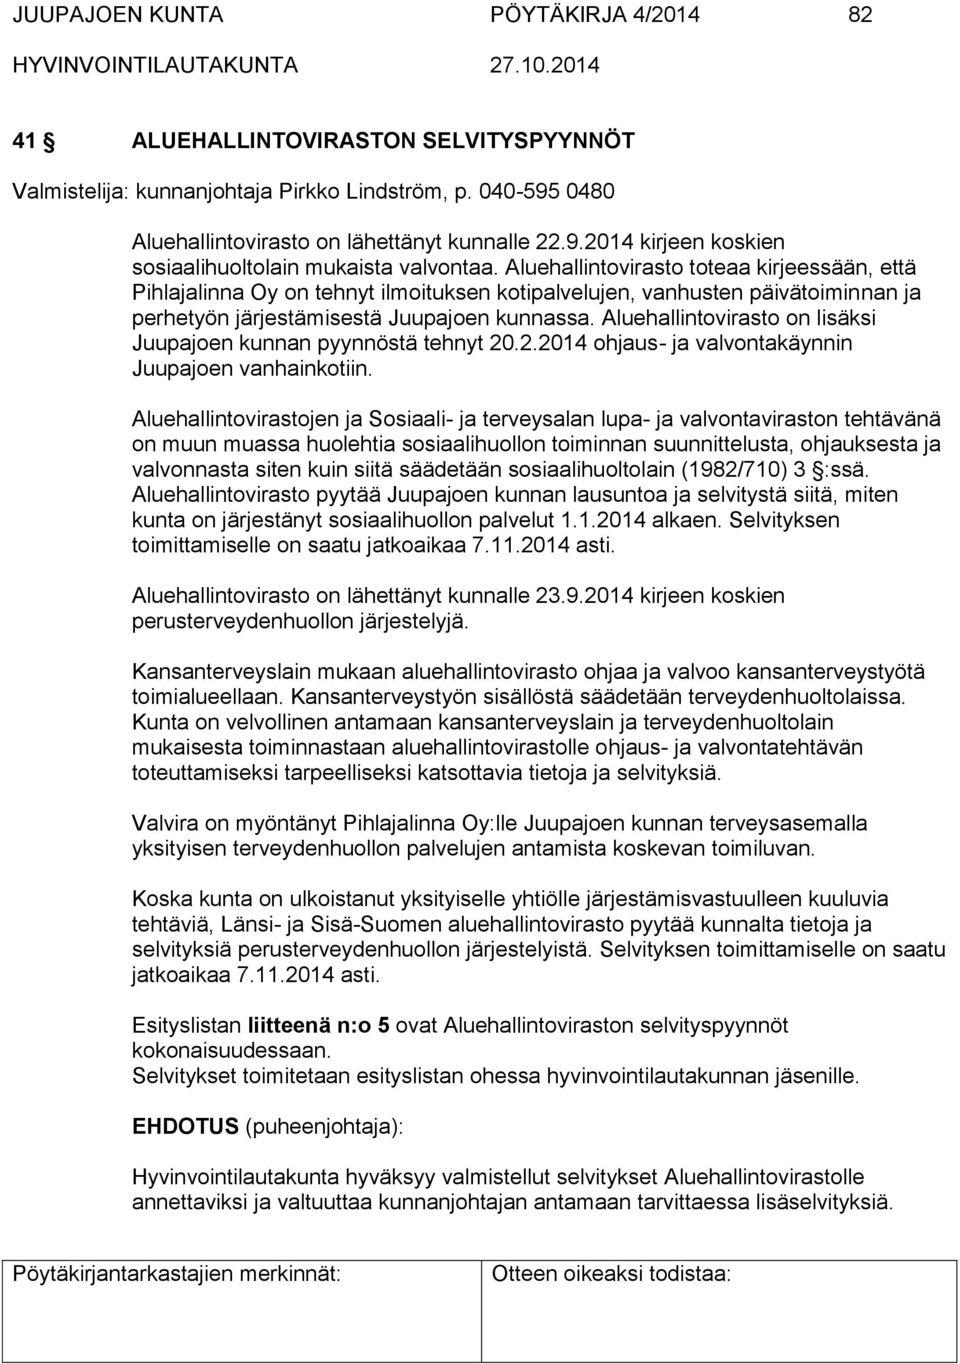 Aluehallintovirasto on lisäksi Juupajoen kunnan pyynnöstä tehnyt 20.2.2014 ohjaus- ja valvontakäynnin Juupajoen vanhainkotiin.